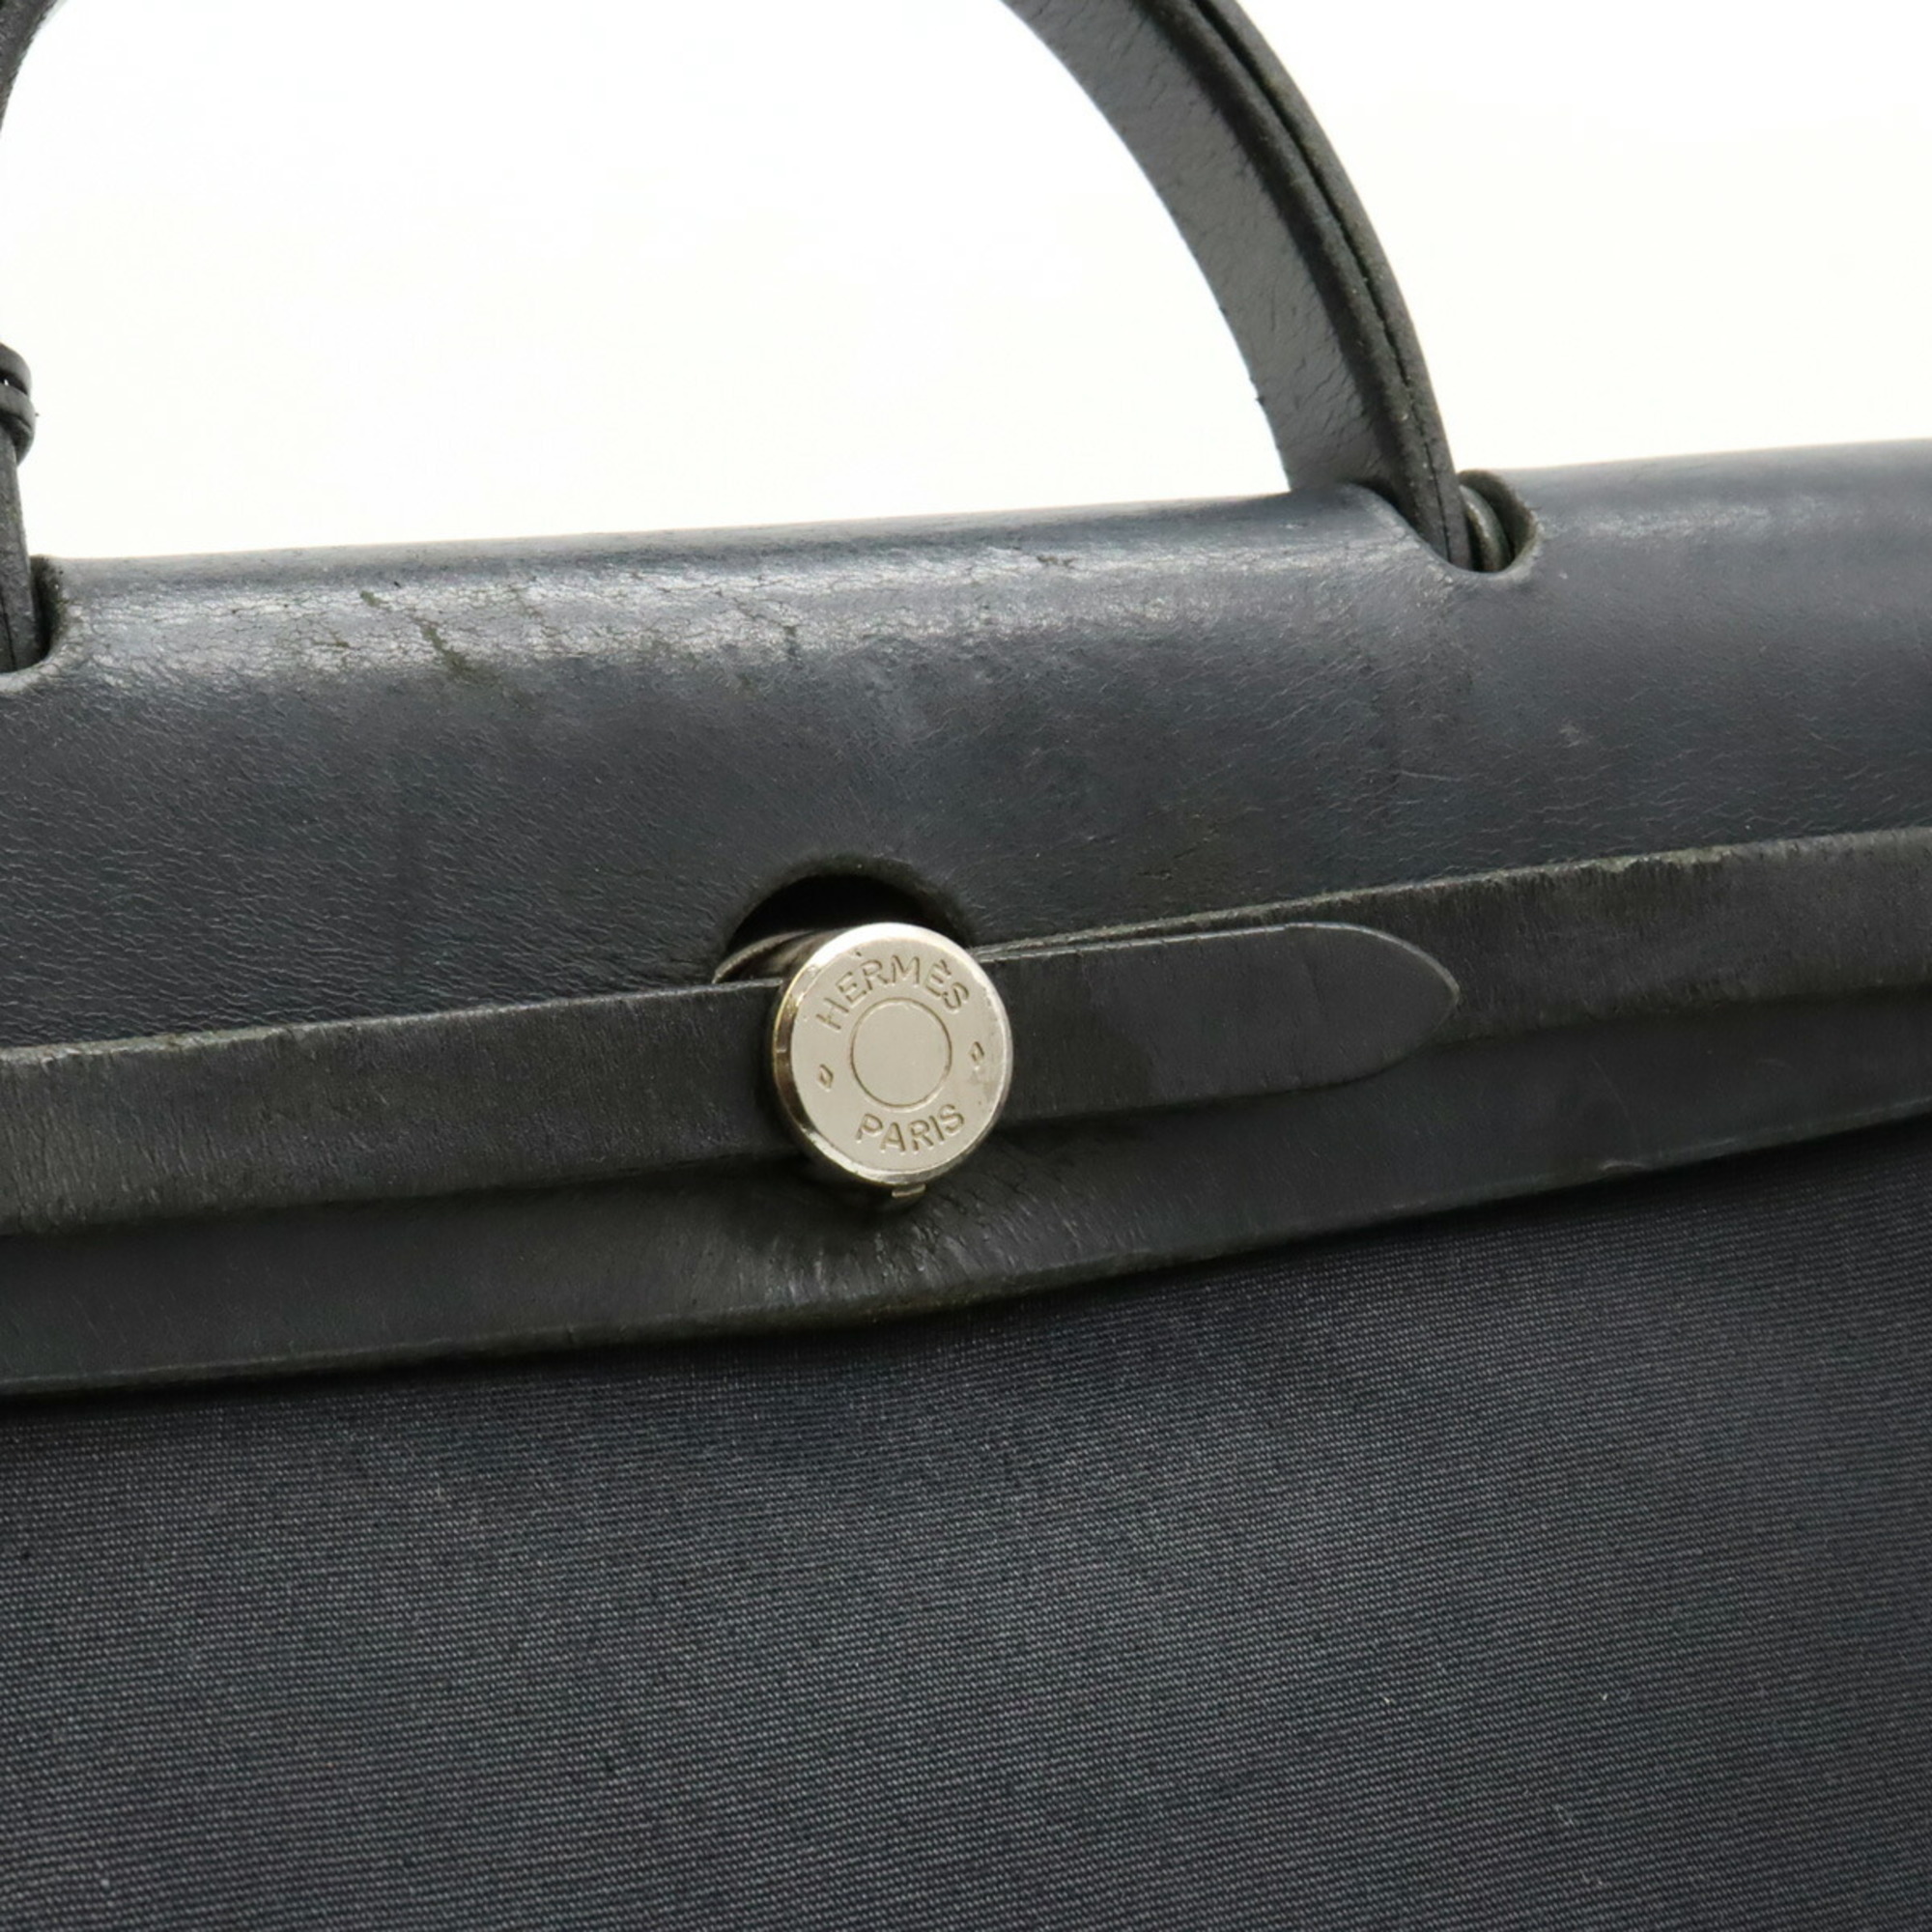 HERMES Hermes Airbag PM Handbag Shoulder Bag Toile Officier Leather Black □D Engraved